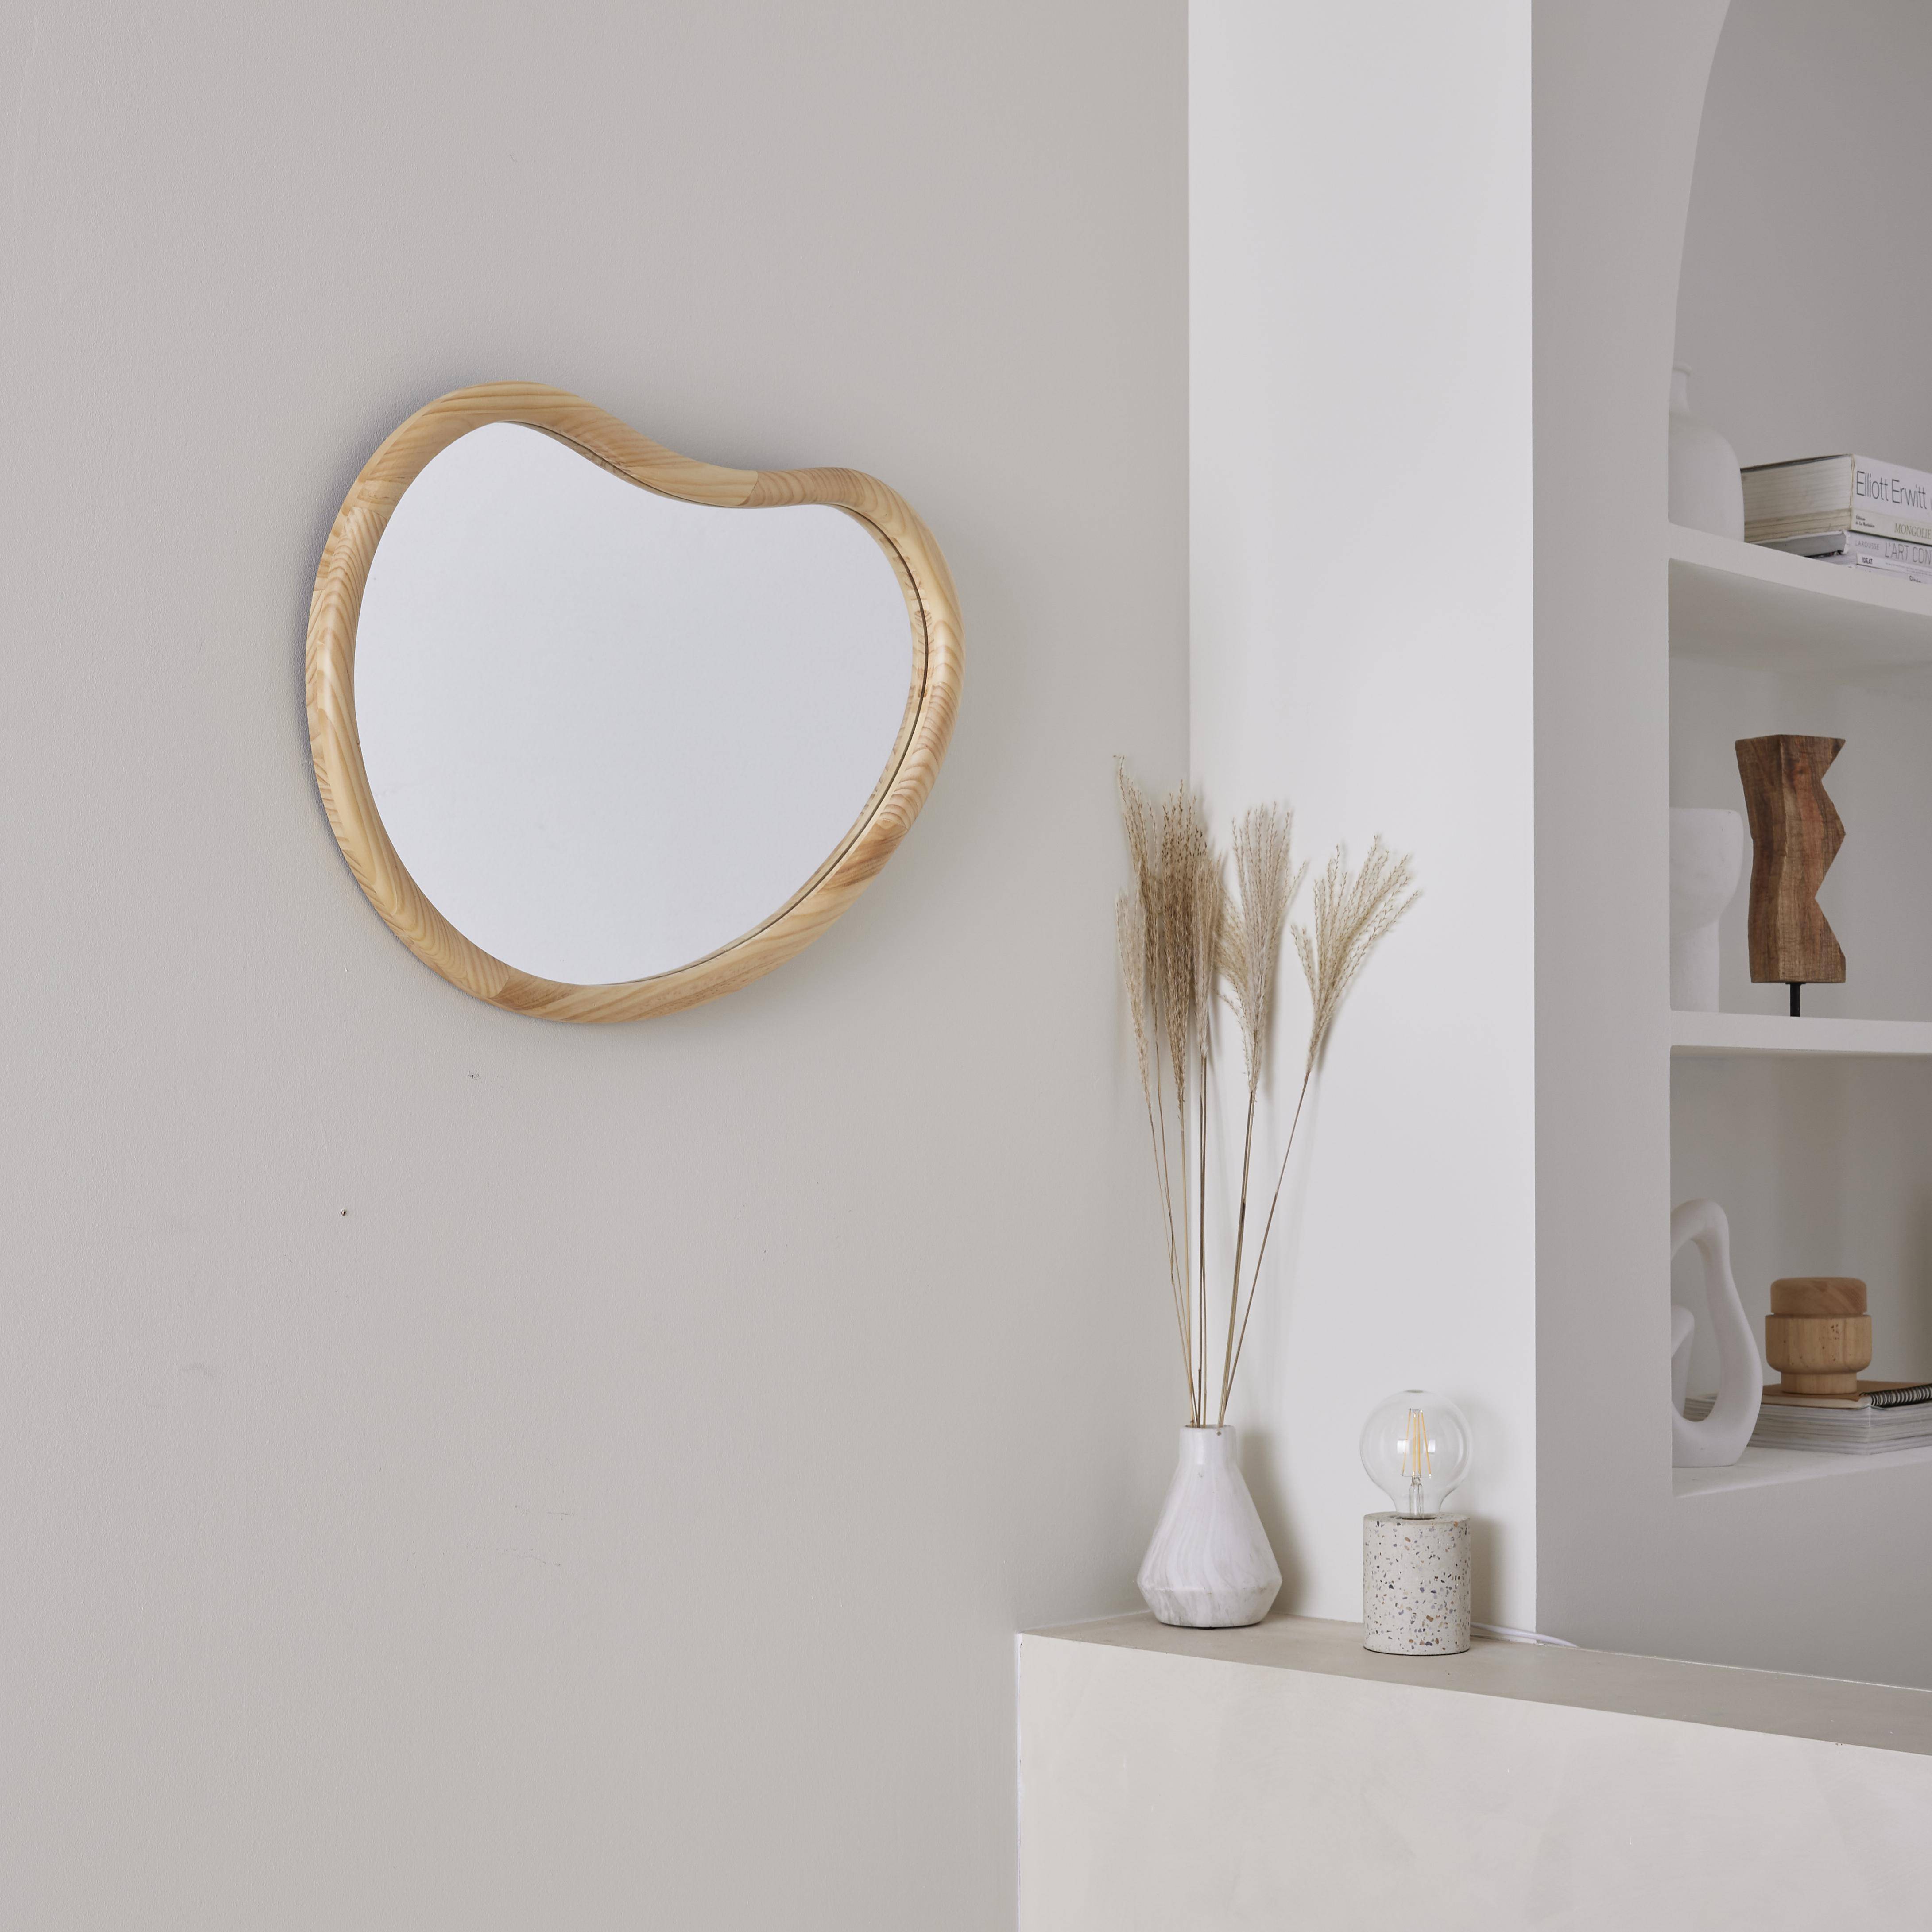 Miroir organique en bois de sapin 65cm épaisseur 3cm coloris naturel idéal entrée, chambre ou salle de bain,sweeek,Photo2